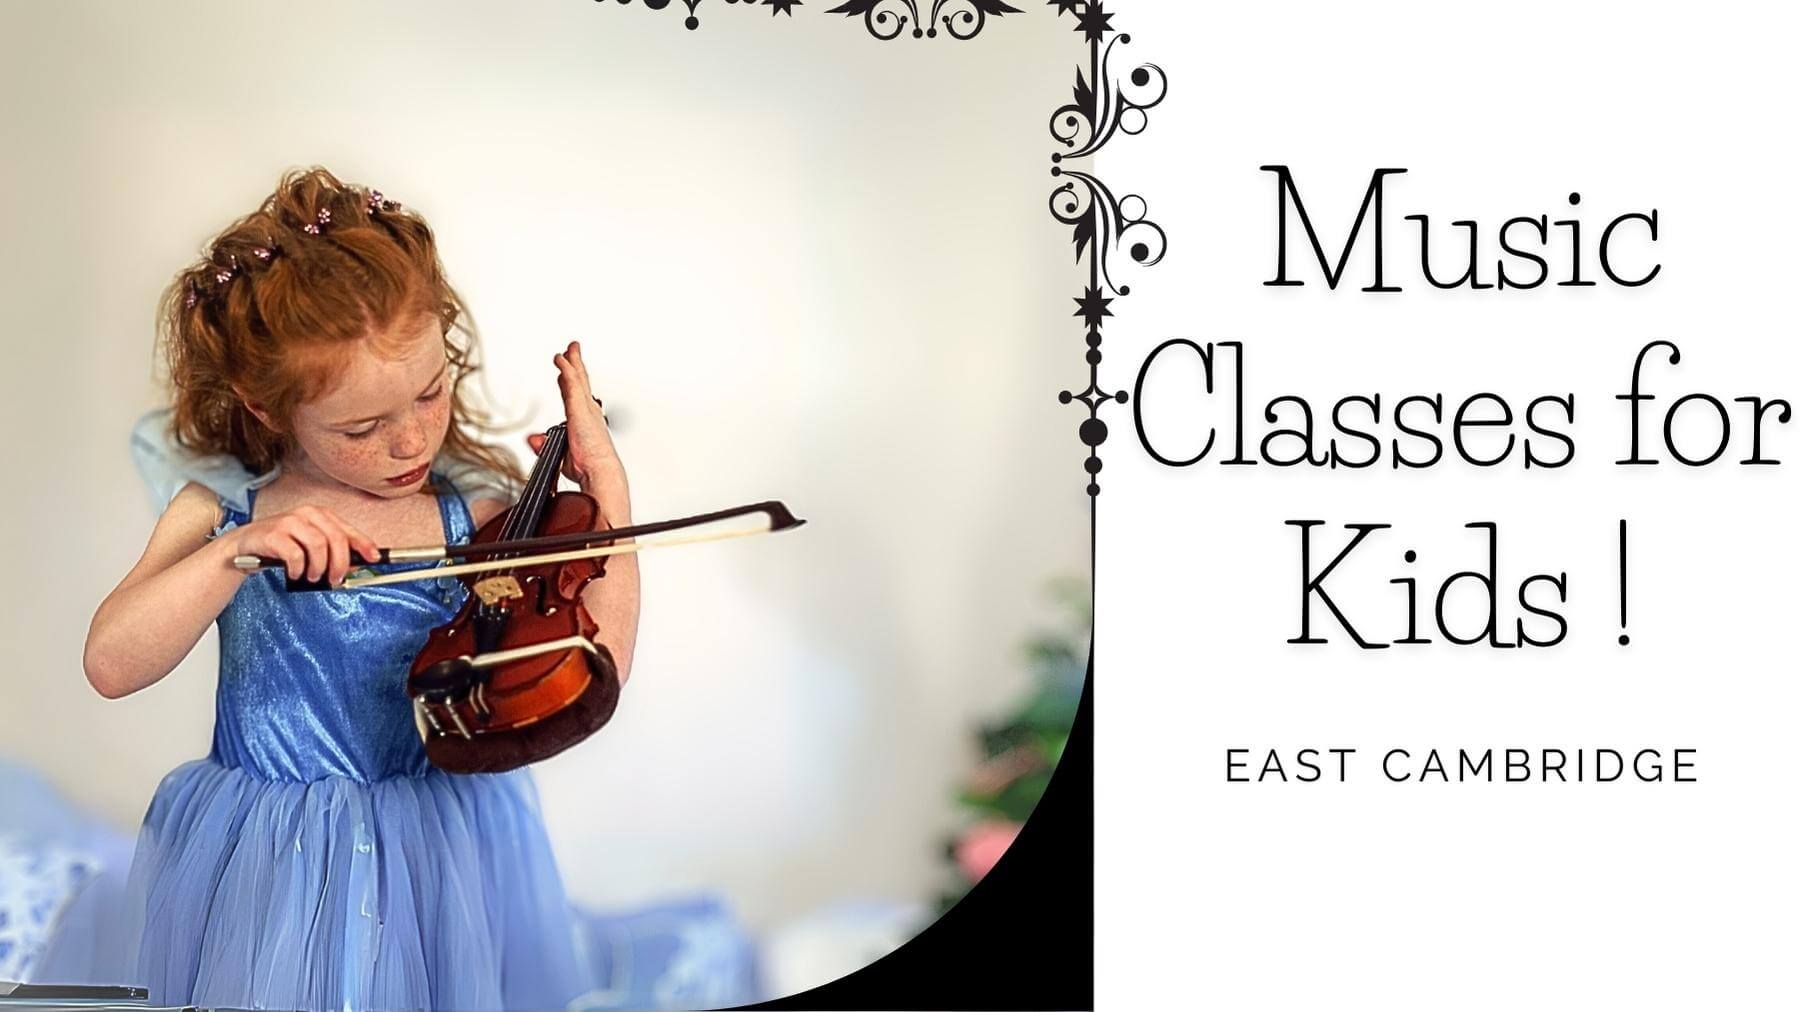 The Best Music Classes for Kids in East Cambridge, Massachusetts